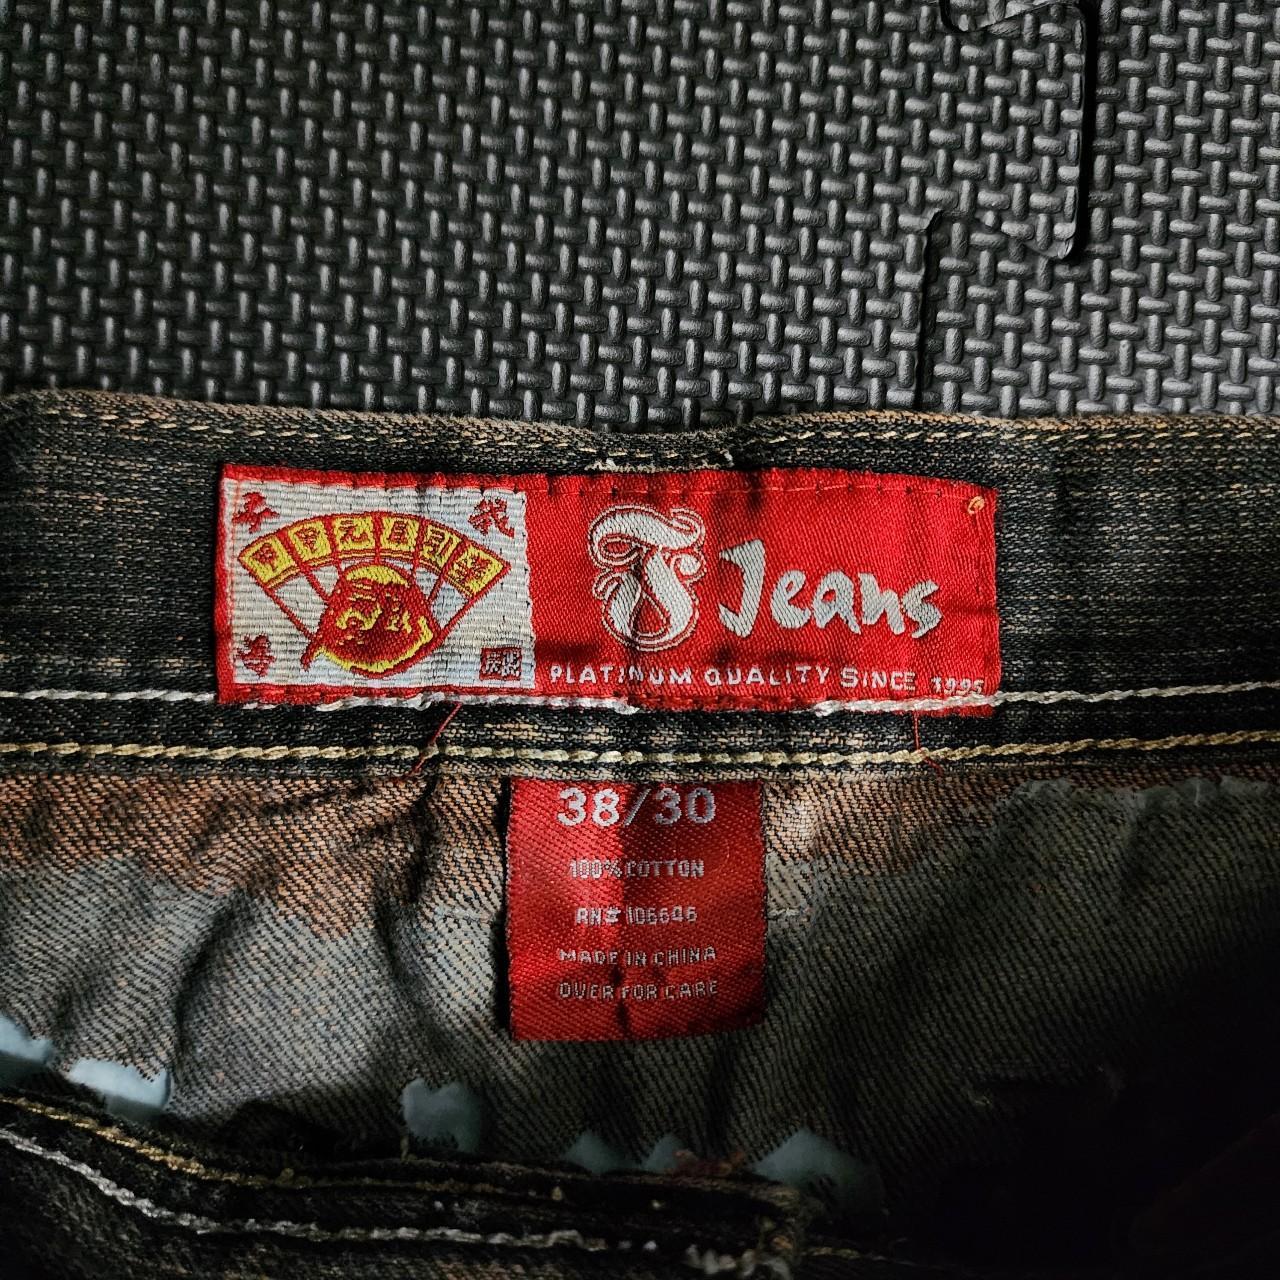 Vintage super baggy y2k jeans Rare find!! Missing... - Depop